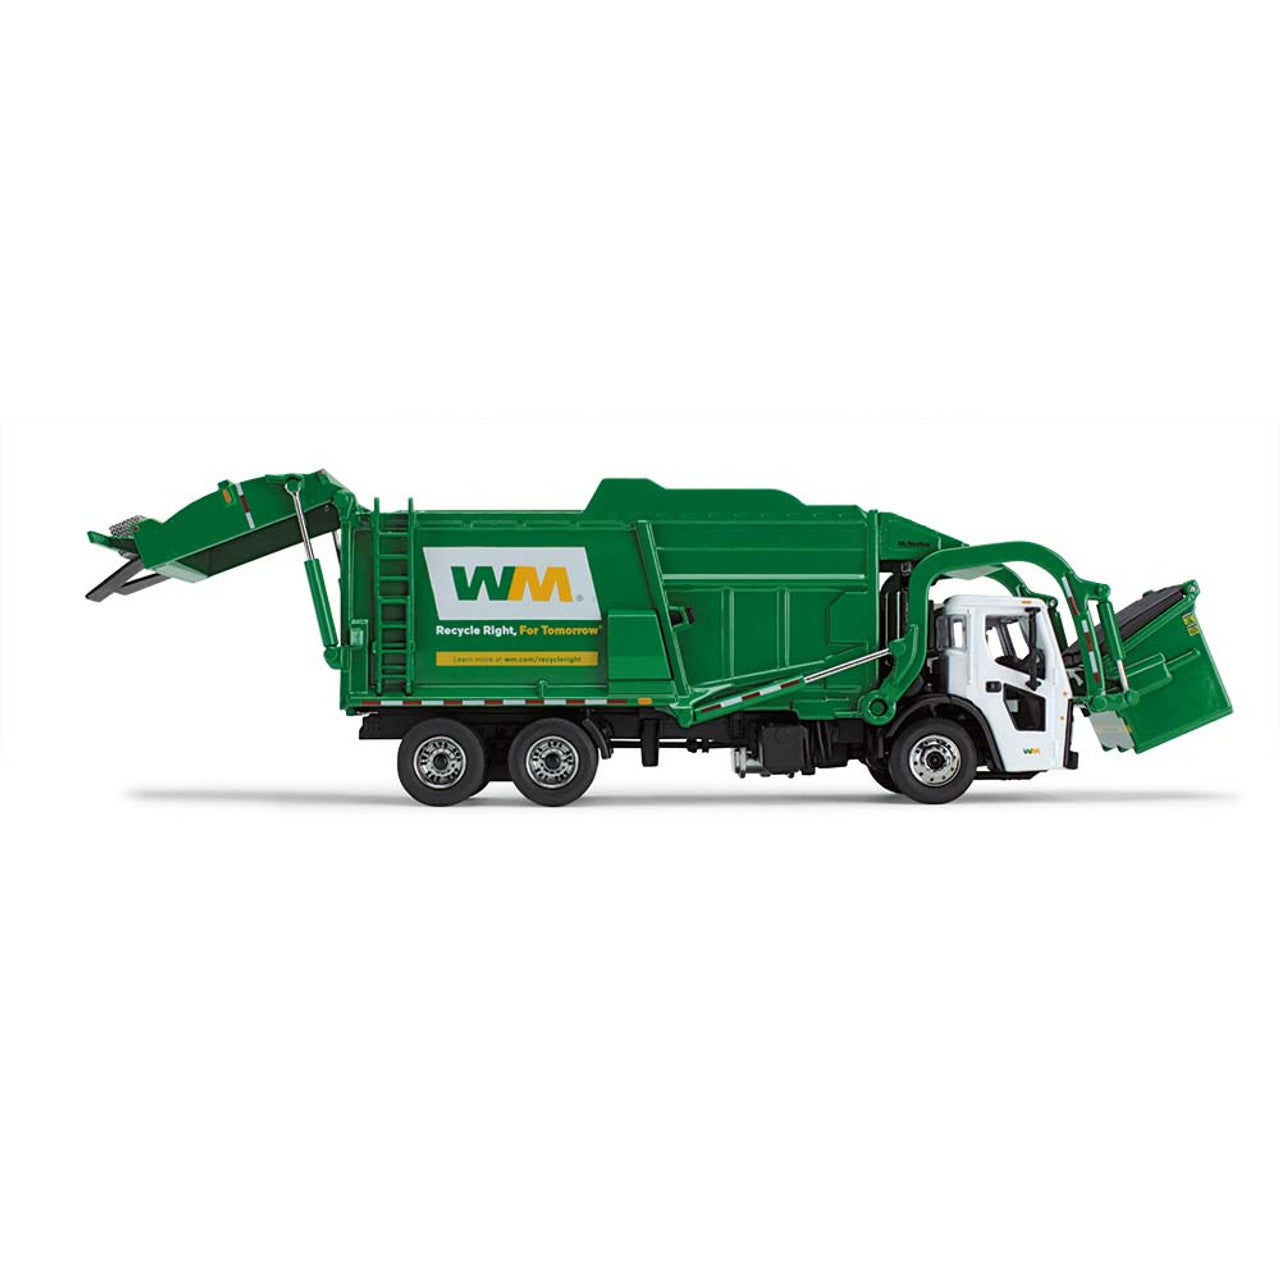 Waste Management - Mack LR Refuse Truck with McNeilus Meridian Front Loader &amp; Trash Bin (Diecast 1:64)